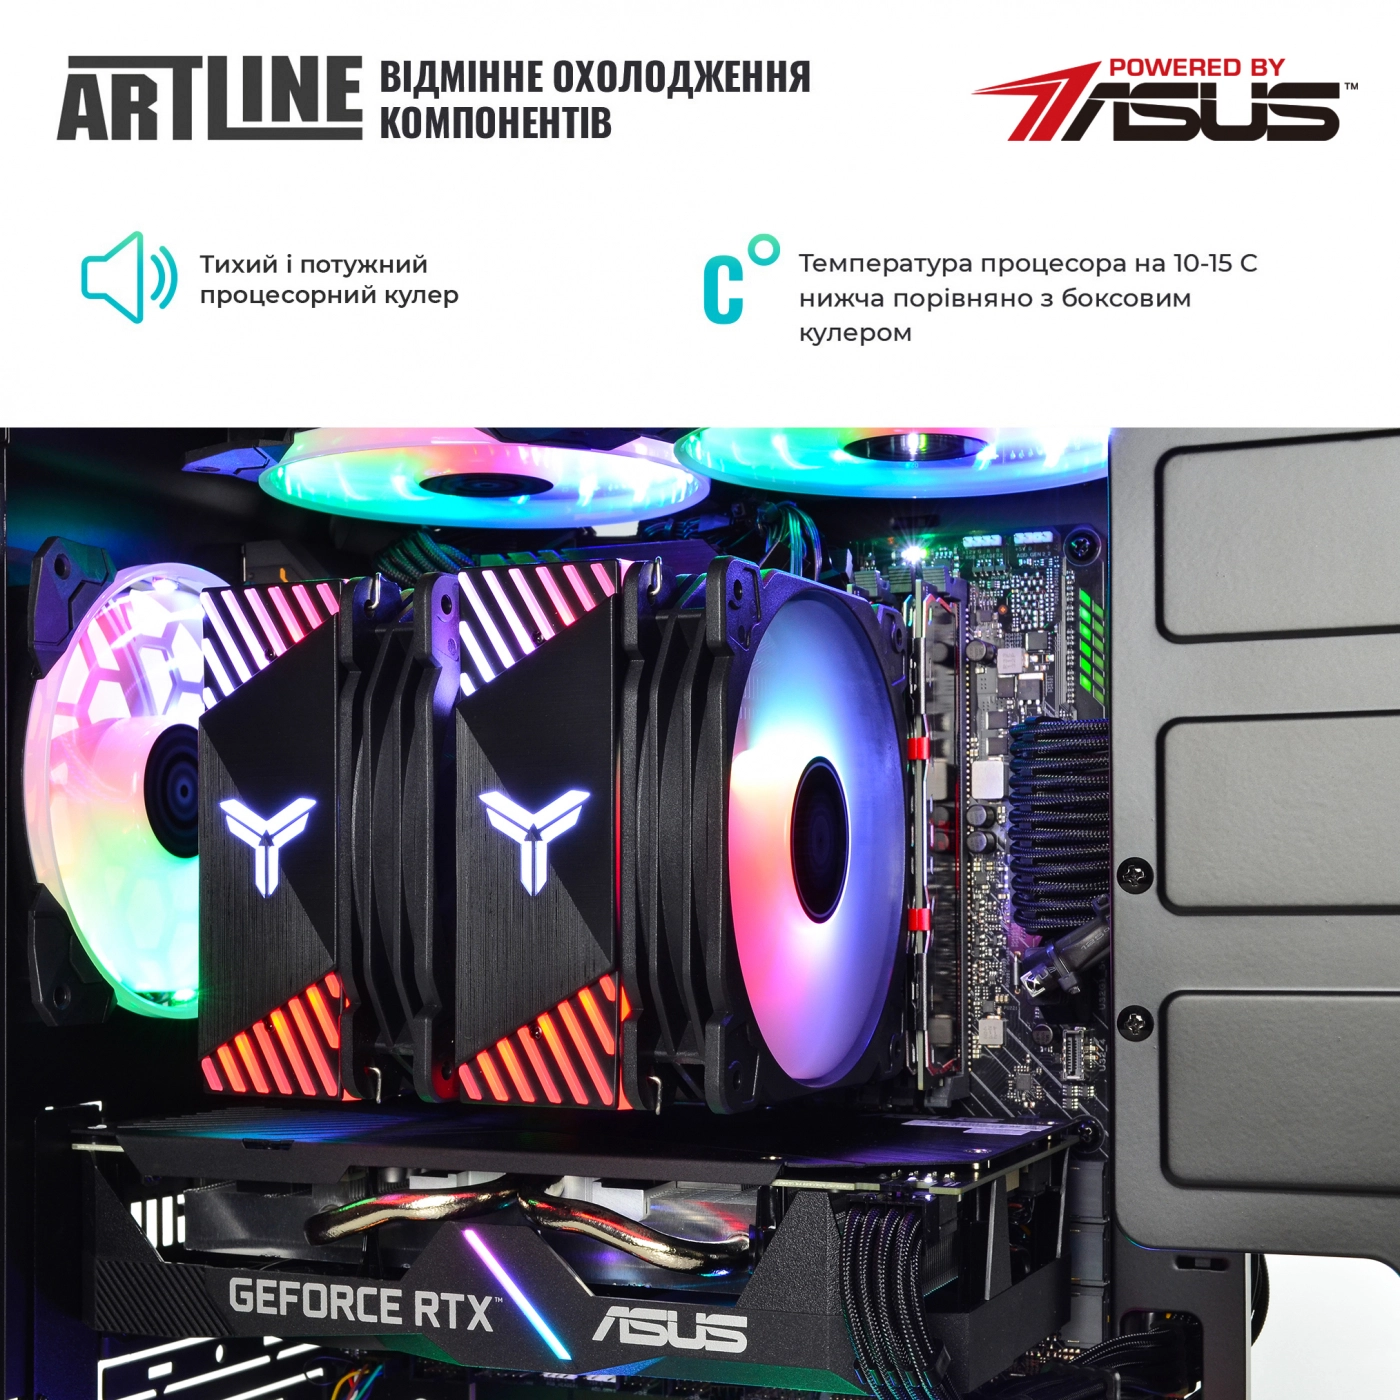 Купить Компьютер ARTLINE Gaming X75v32 - фото 5